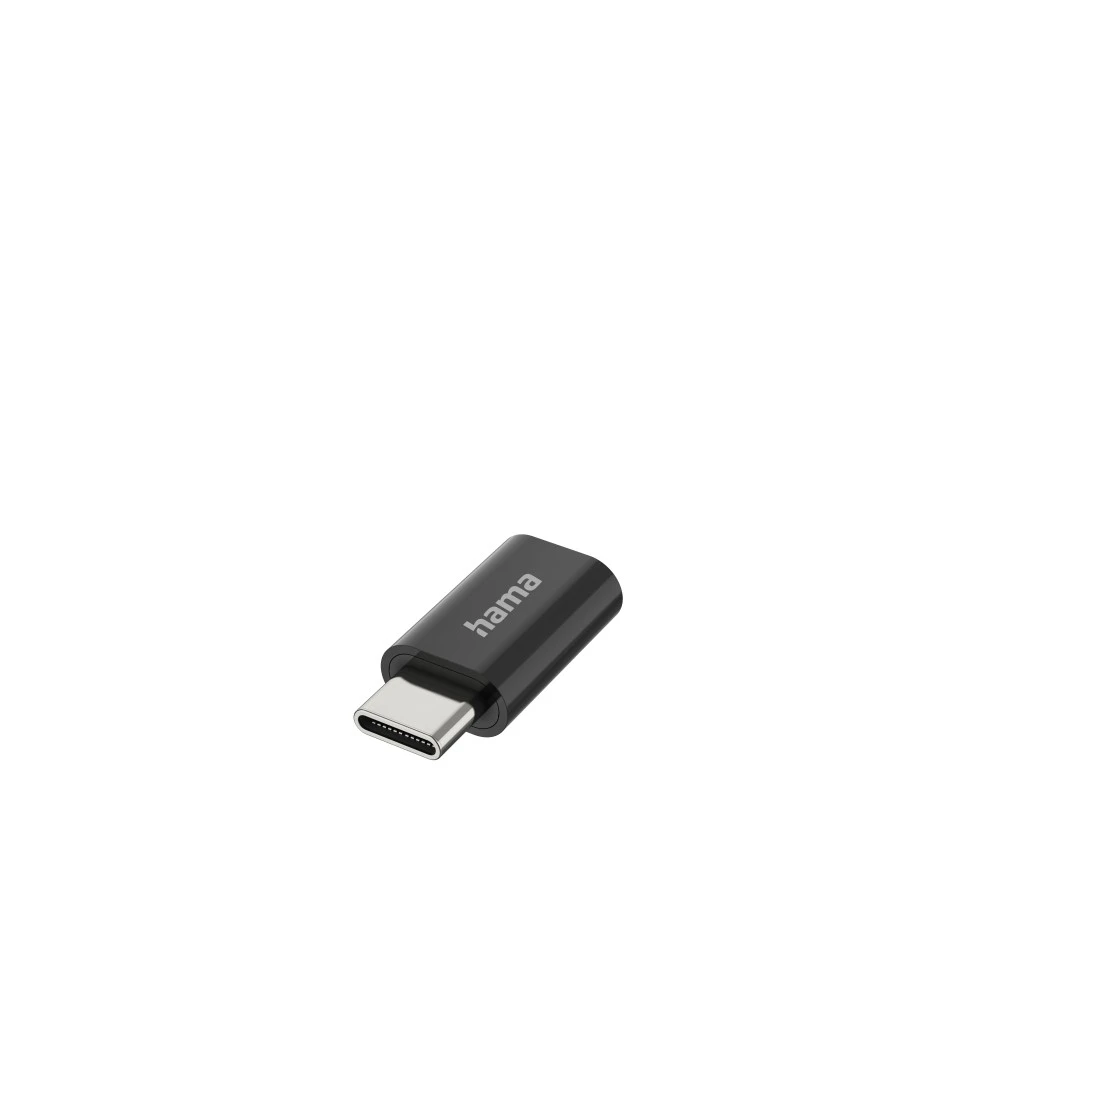 USB-OTG-Adapter, Mini-USB-Stecker - USB-Buchse, USB 2.0, 480 Mbit